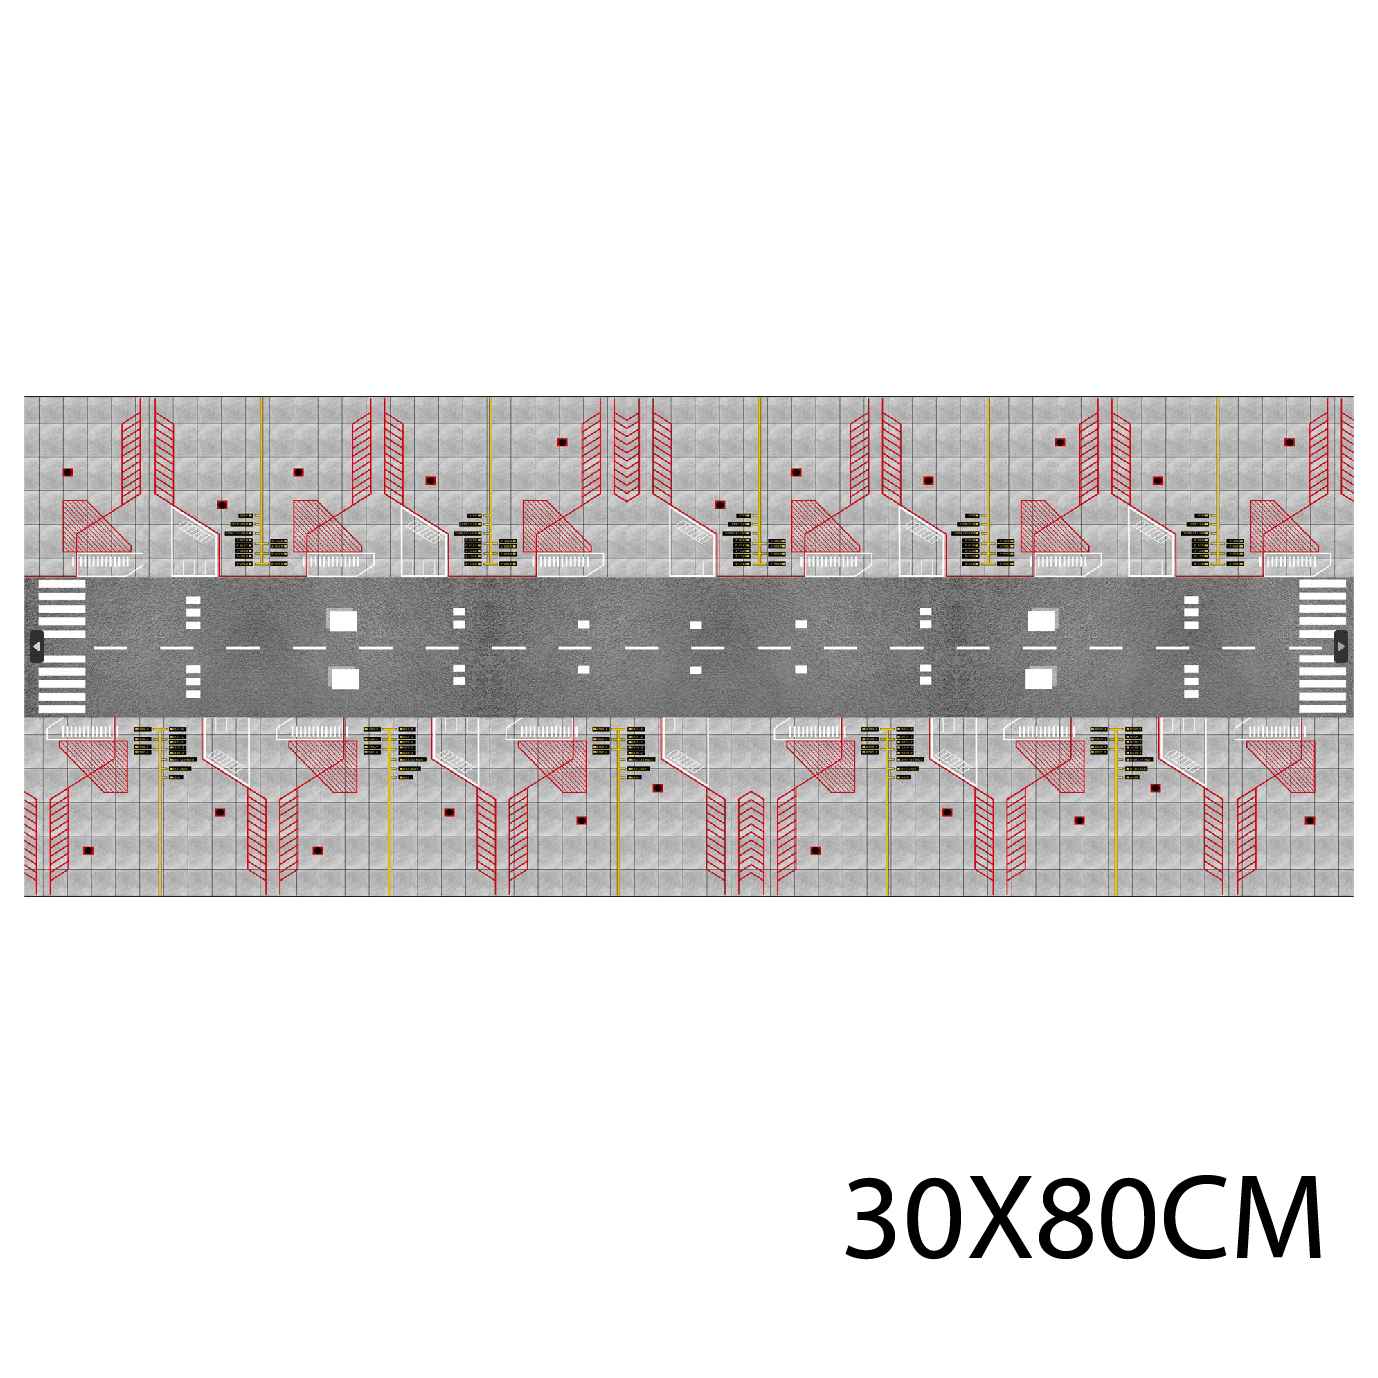  Diorama sa bàn sân bay in PP cán mờ chống nước bụi bẩn khổ dài 60cm cho máy bay mô hình 16cm 20cm 1:200 1:400 DR014 